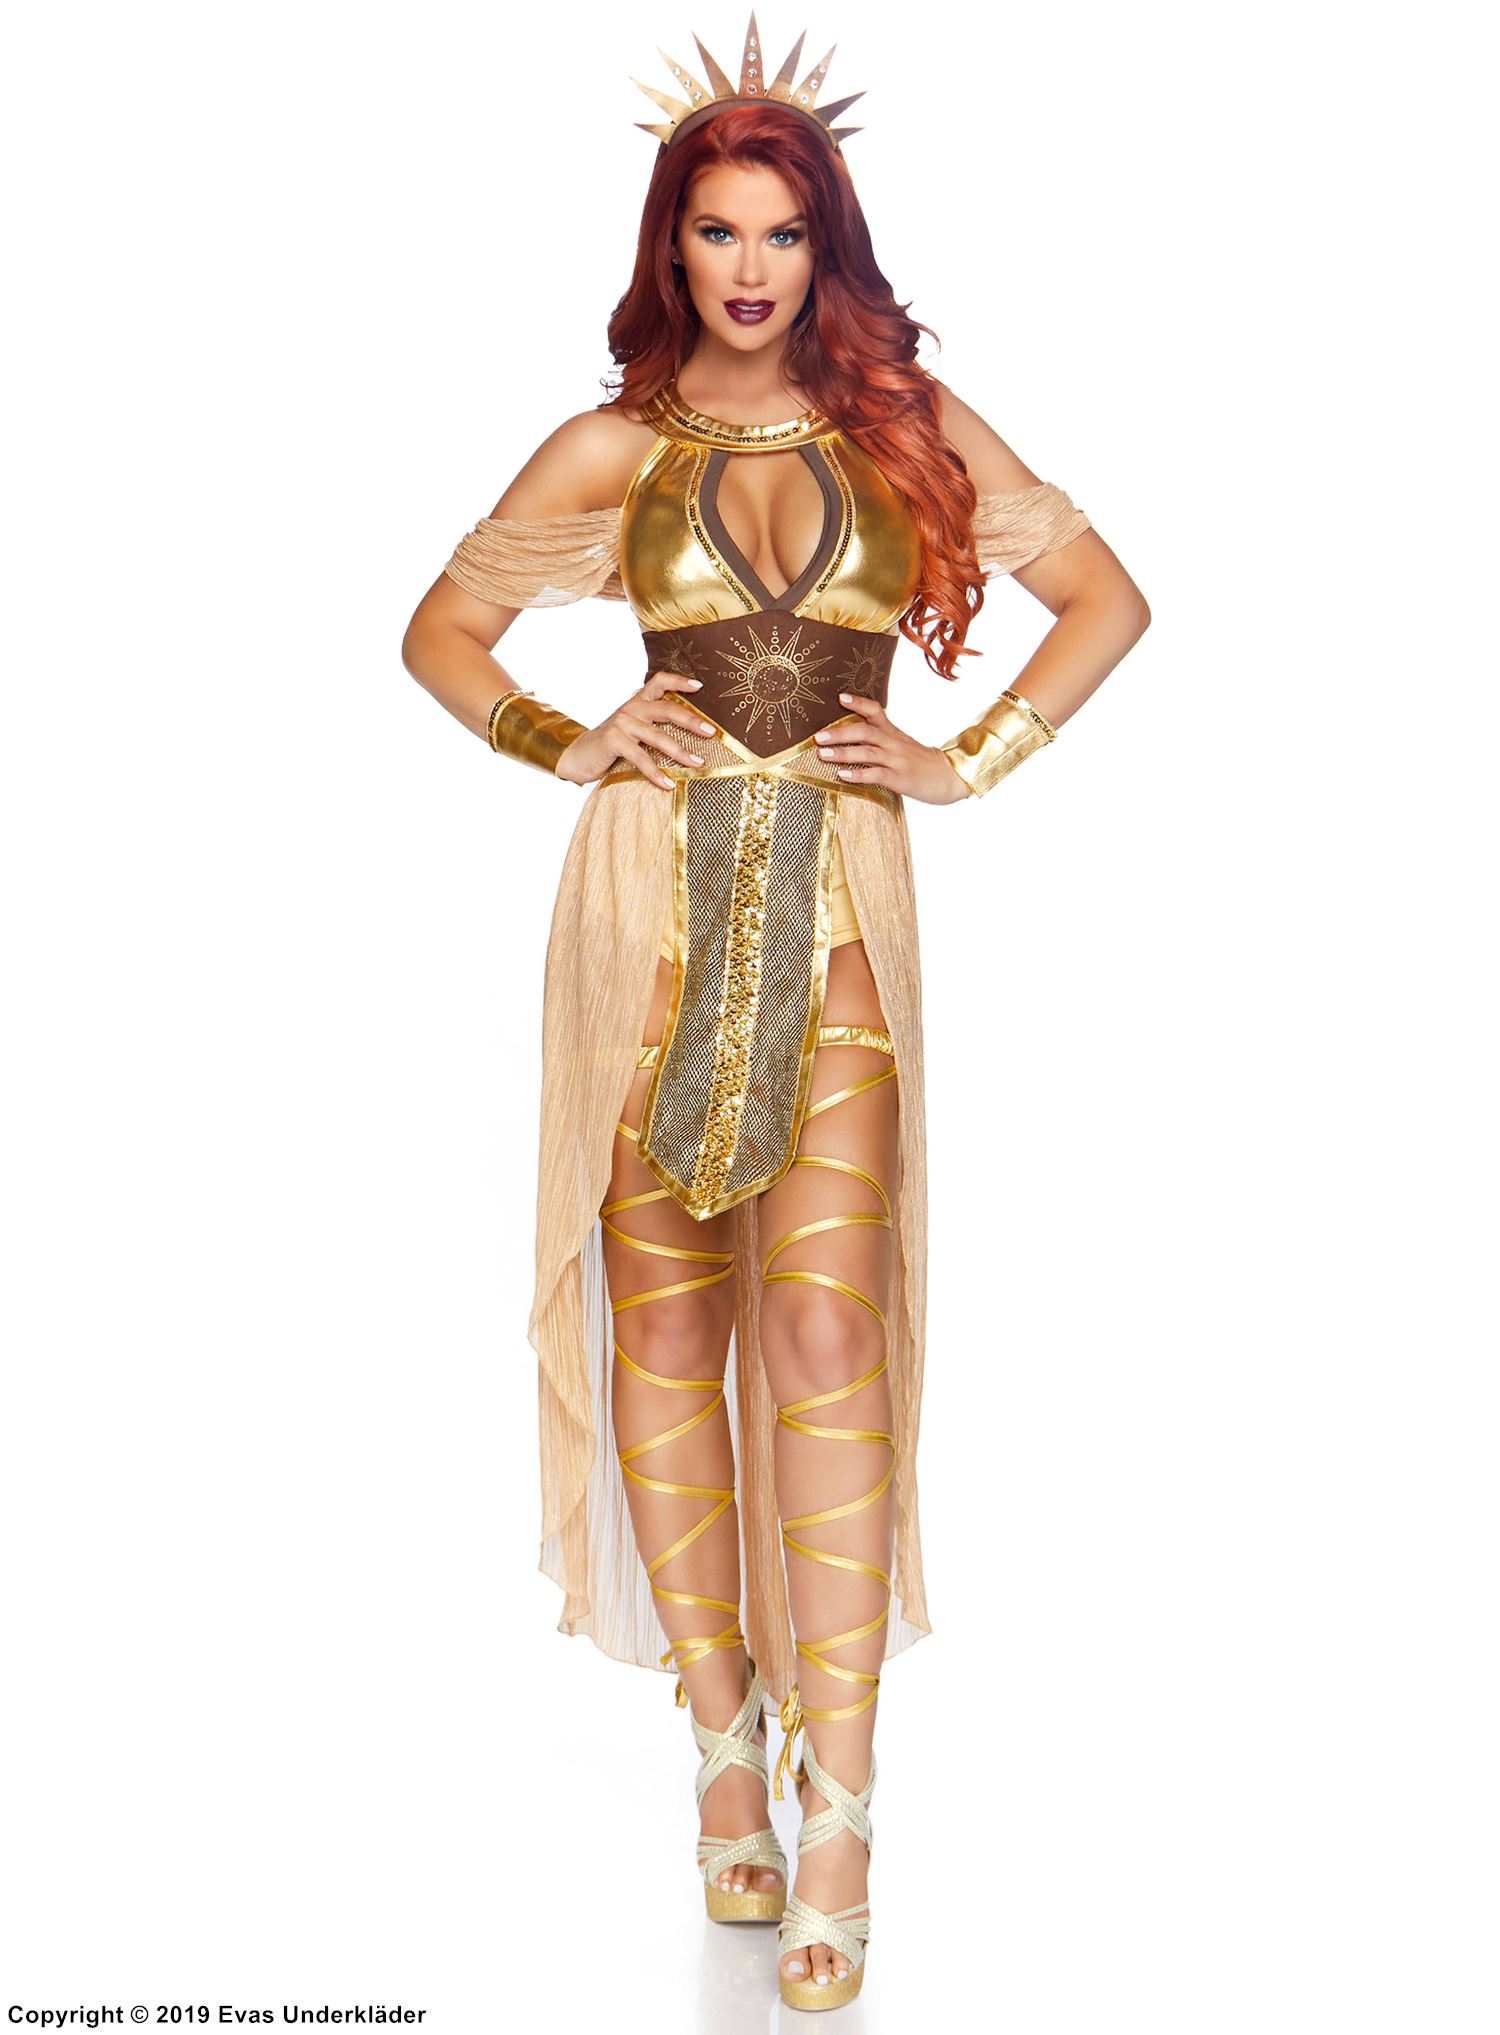 Sun goddess, costume dress, keyhole, cold shoulder